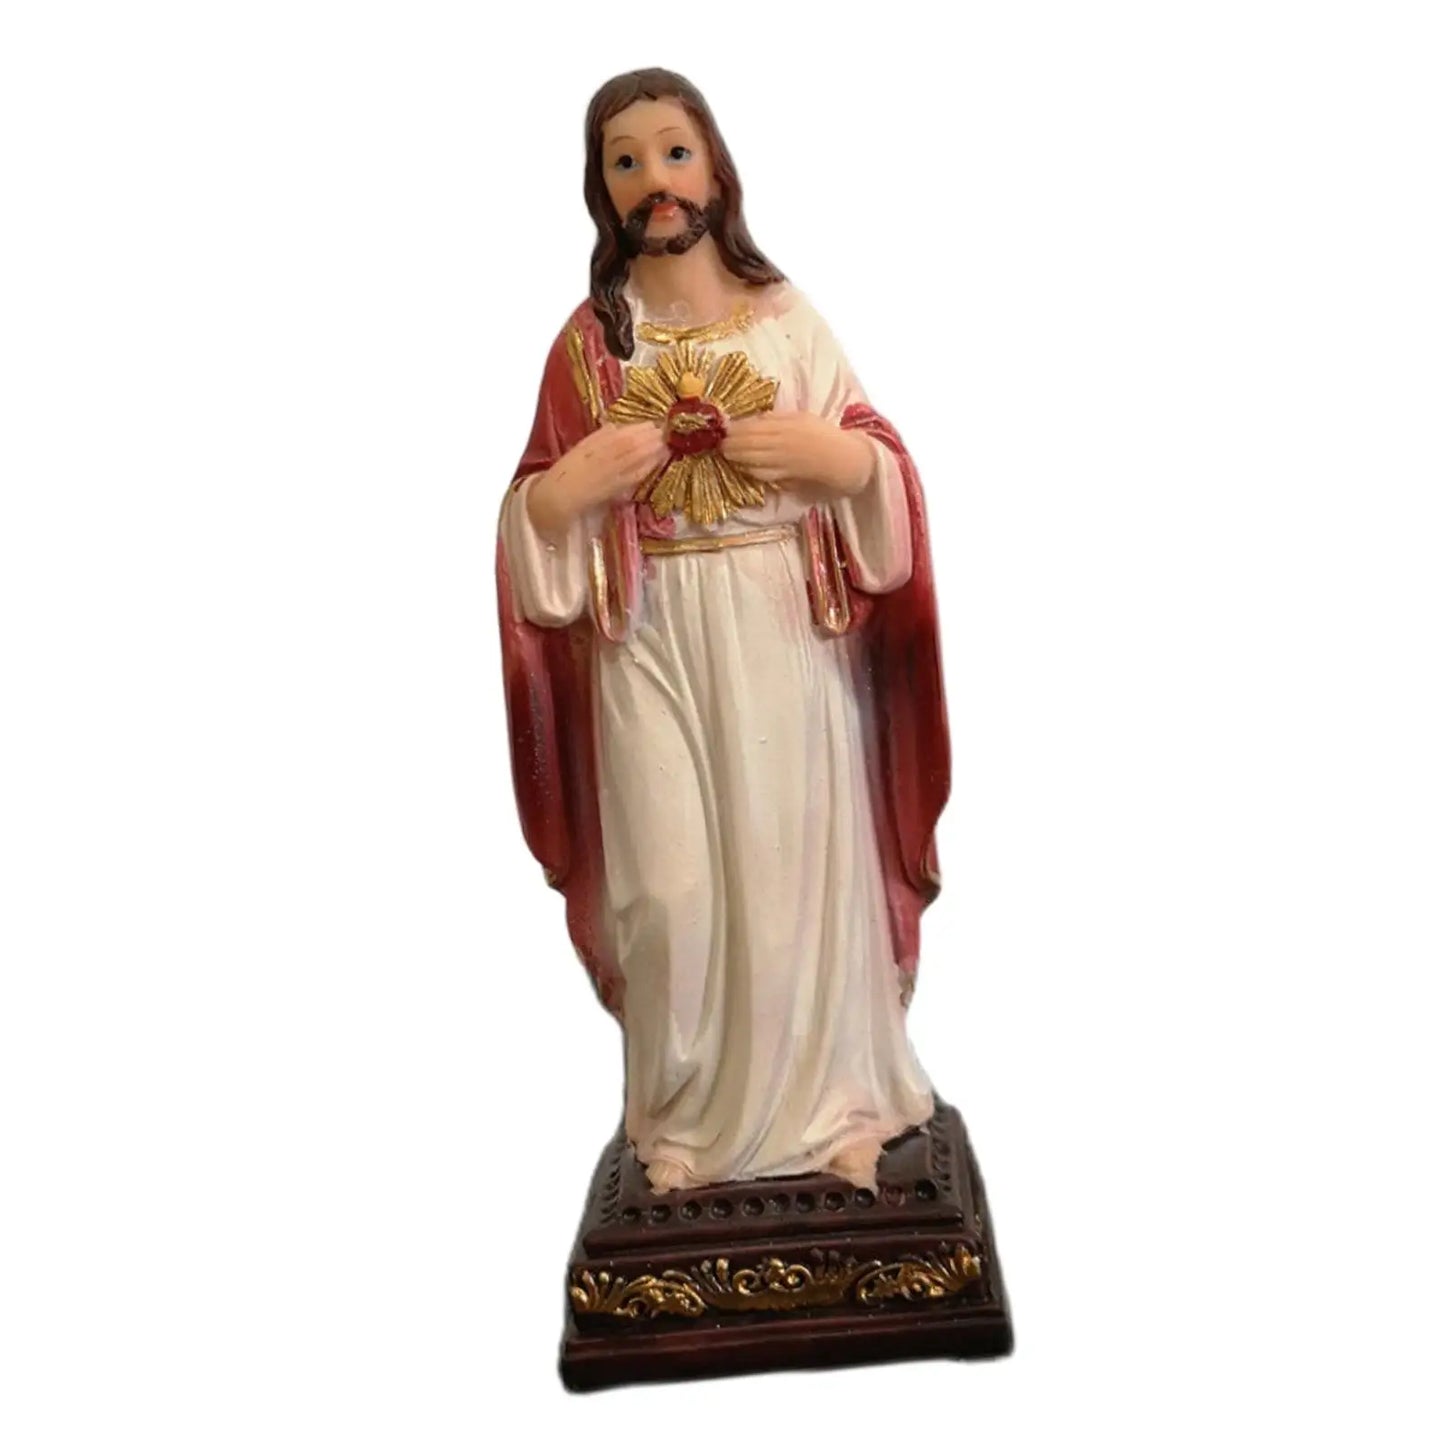 Statue der Jungfrau Maria, Kunstwerk, 13 cm, Sammlung, Schreibtisch-Display, religiöse Statue aus Kunstharz, für Regal, Schlafzimmer, Schreibtisch, Kirche, Büro